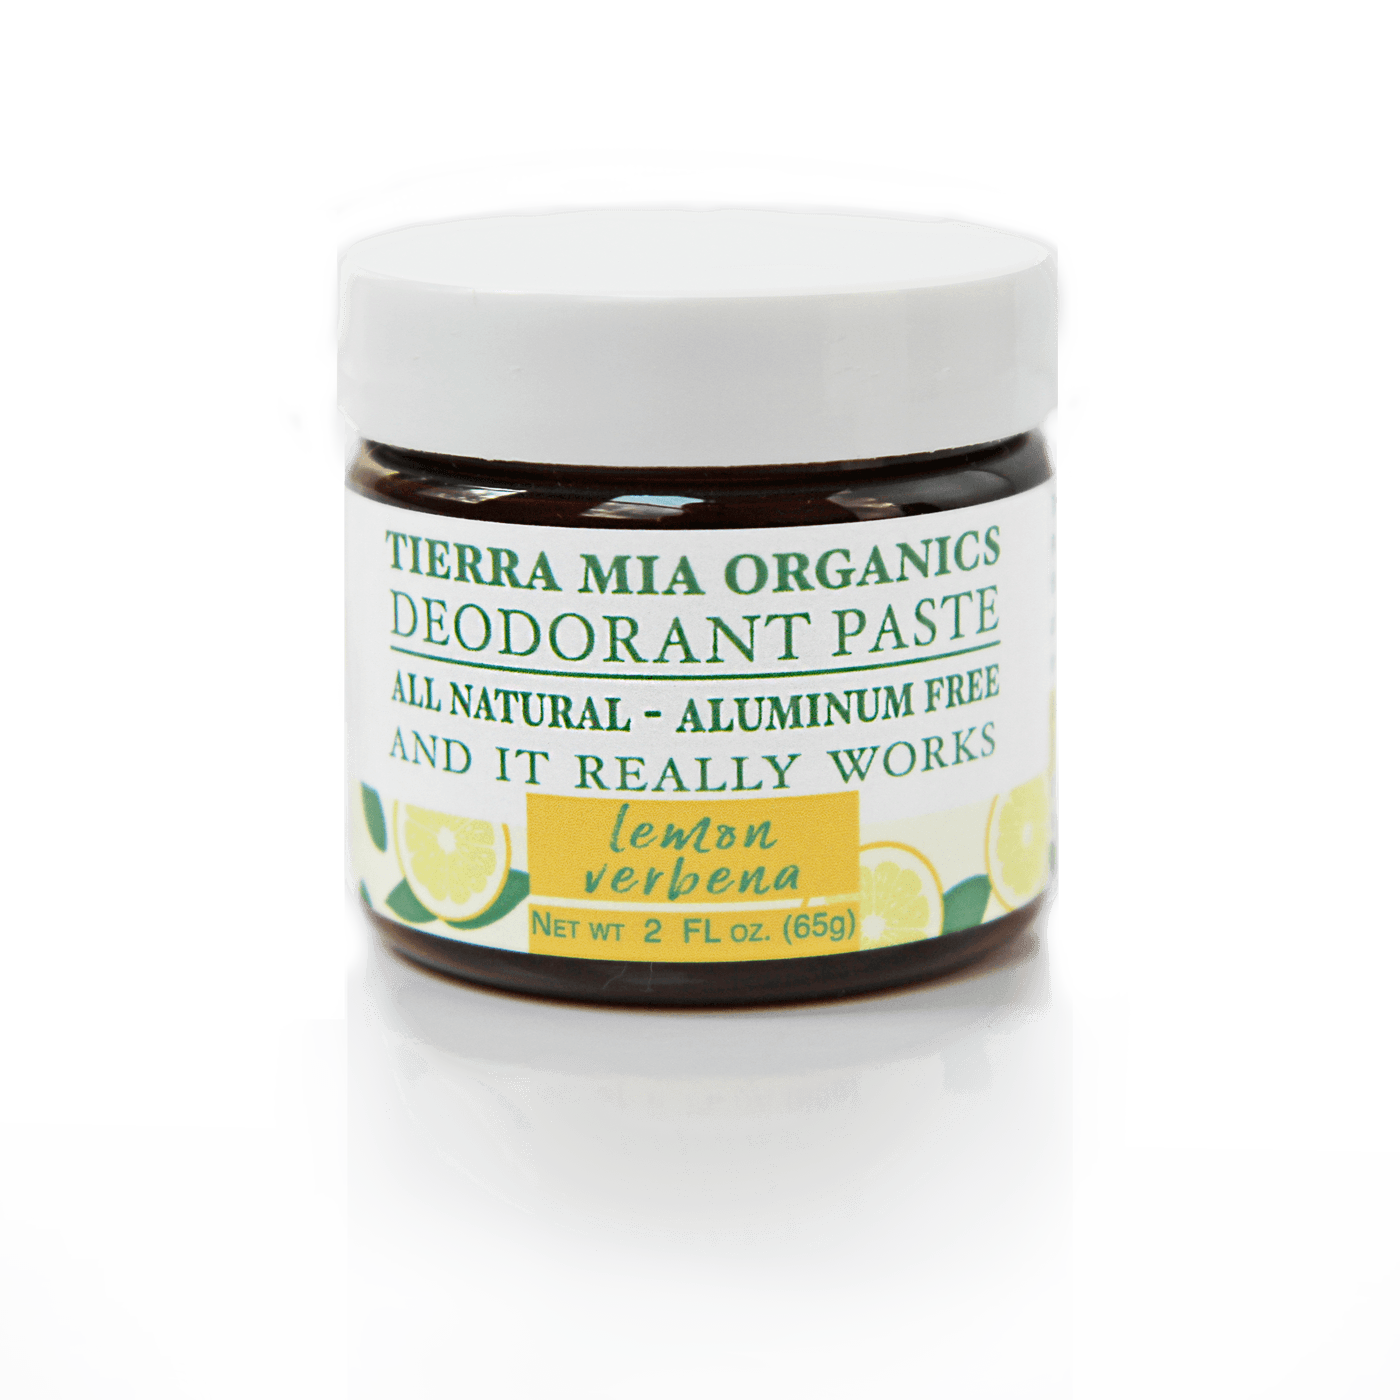 Deodorant Paste — All Natural and Aluminum Free - Tierra Mia Organics